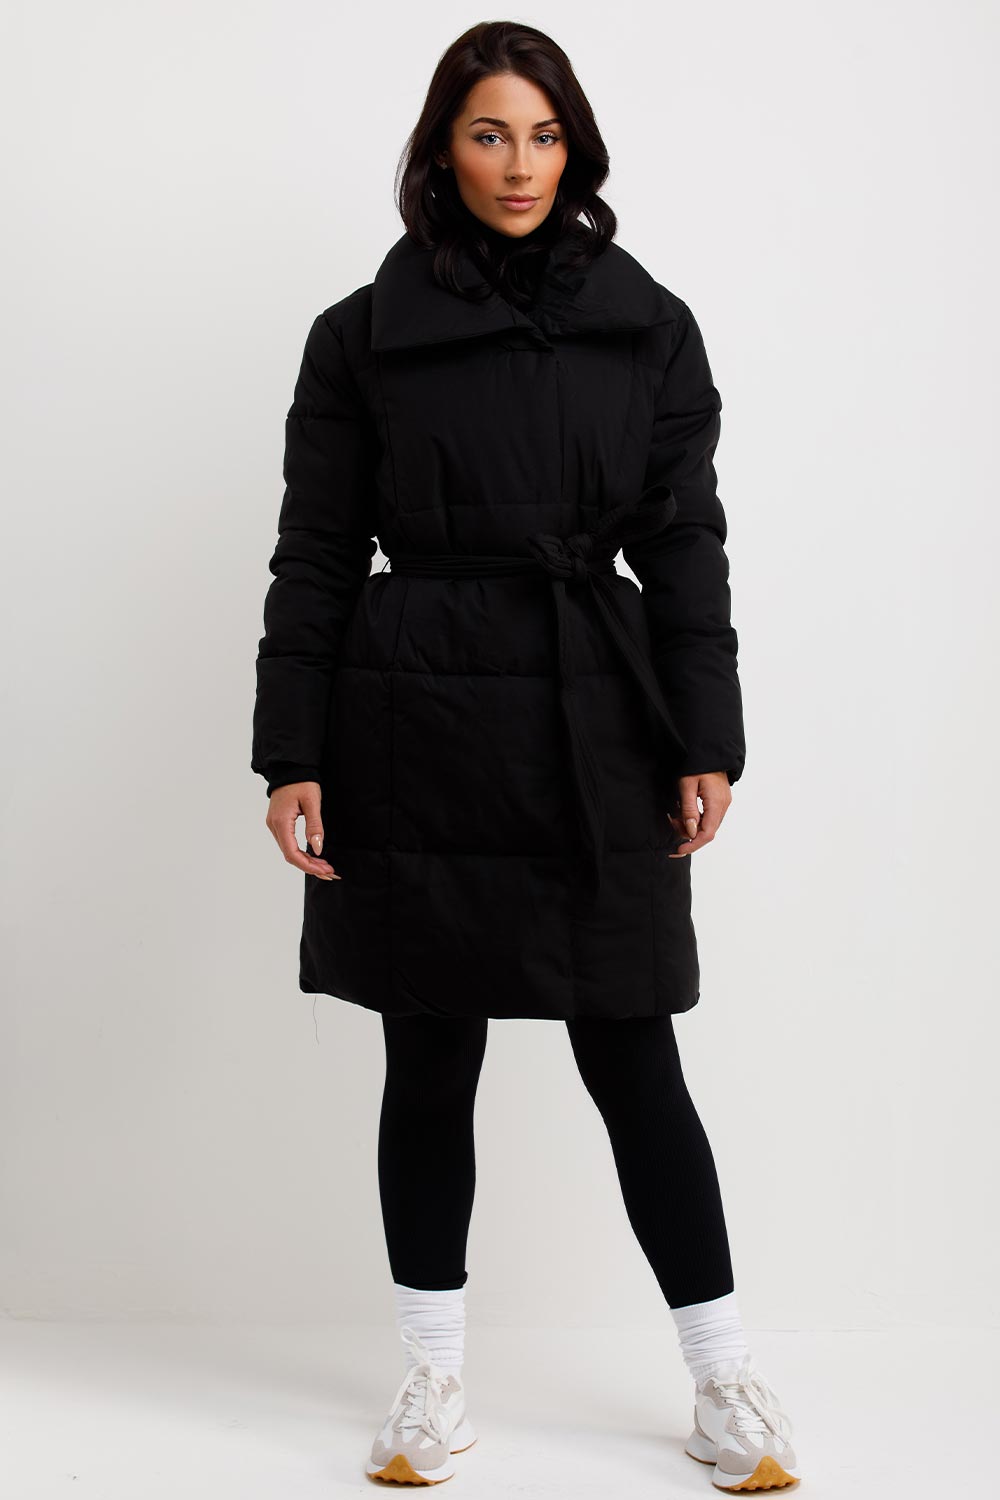 womens black padded puffer coat duvet style